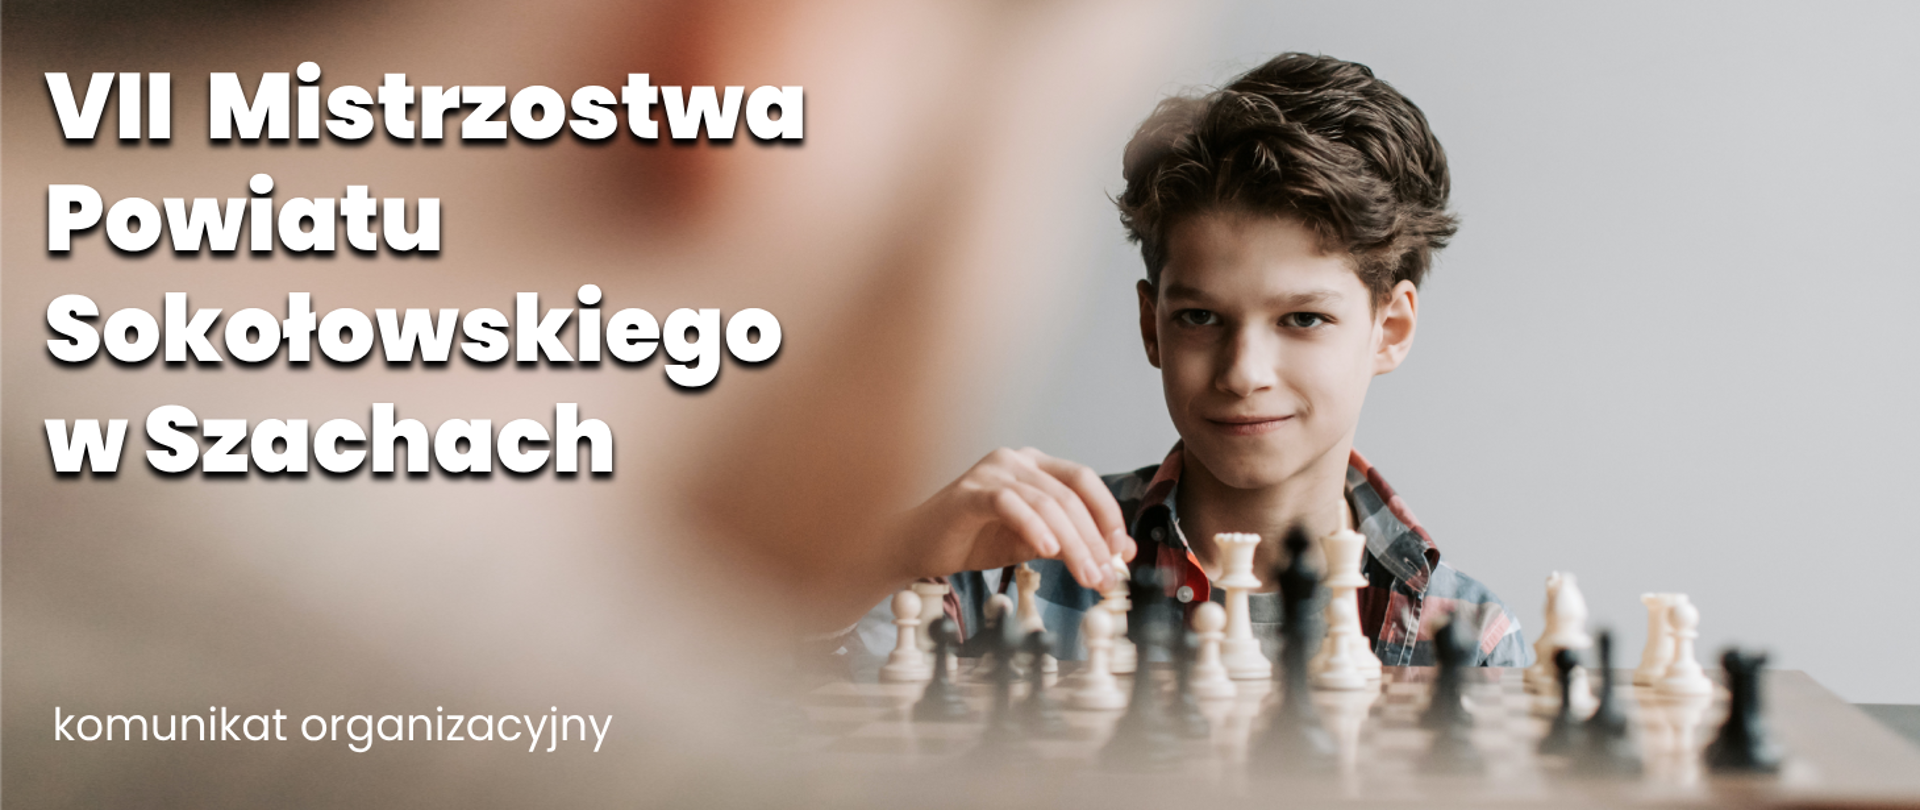 Na zdjęciu chłopiec grający w szachy oraz napis VII Mistrzostwa Powiatu Sokołowskiego w Szachach - komunikat organizacyjny.